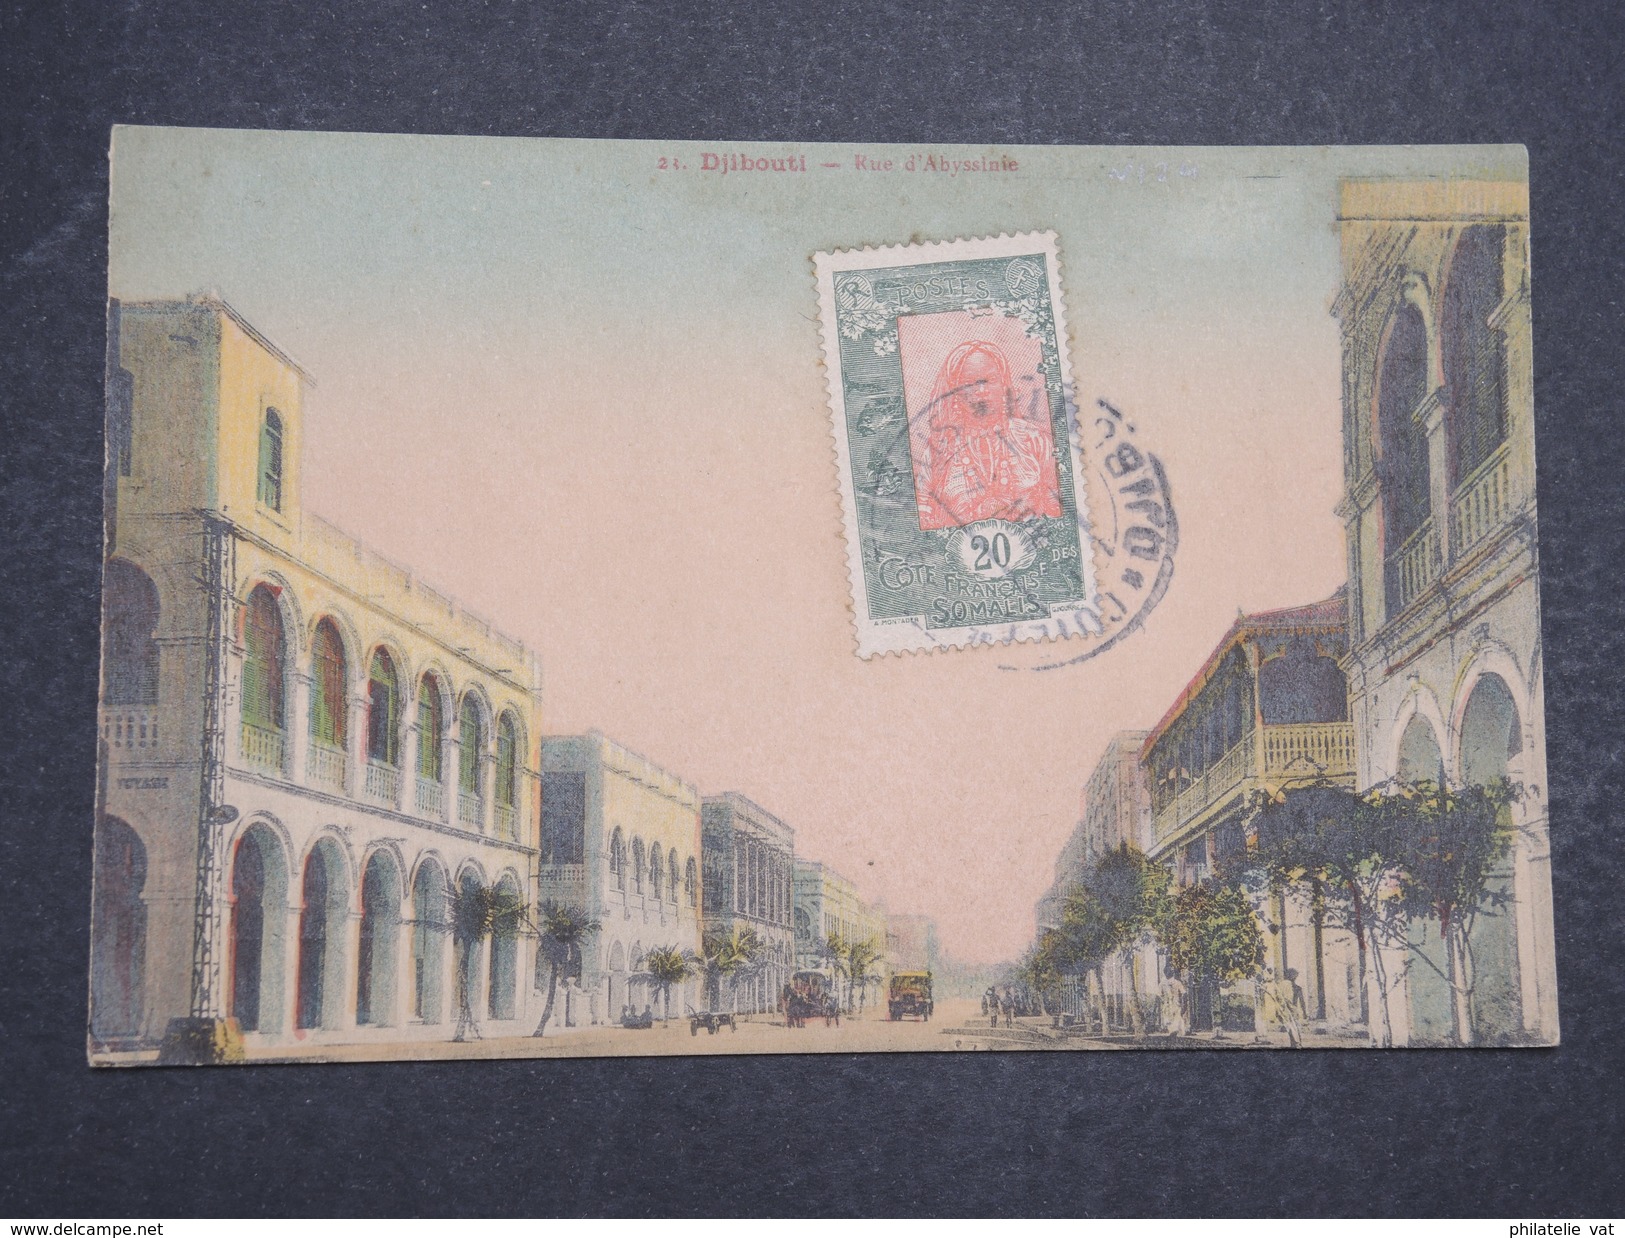 COTE FRANçAISE DES SOMALIS - Carte Postale Djibouti Pour Paris -Nov 1934 - P22098 - Lettres & Documents